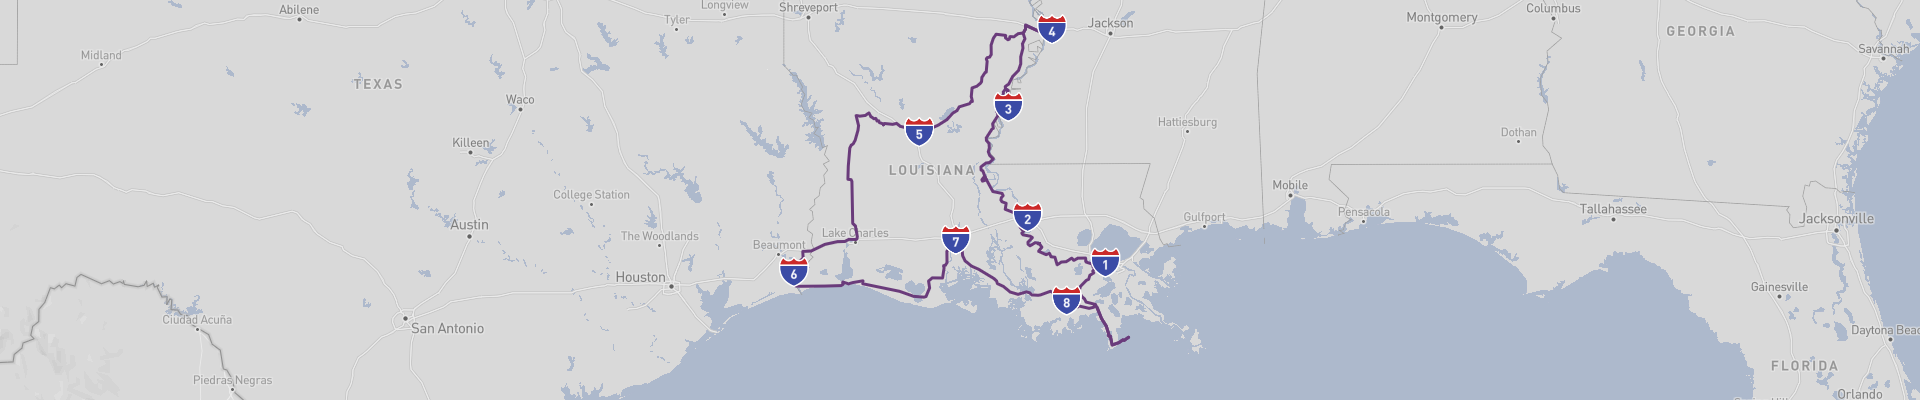 Louisiana Roadtrip